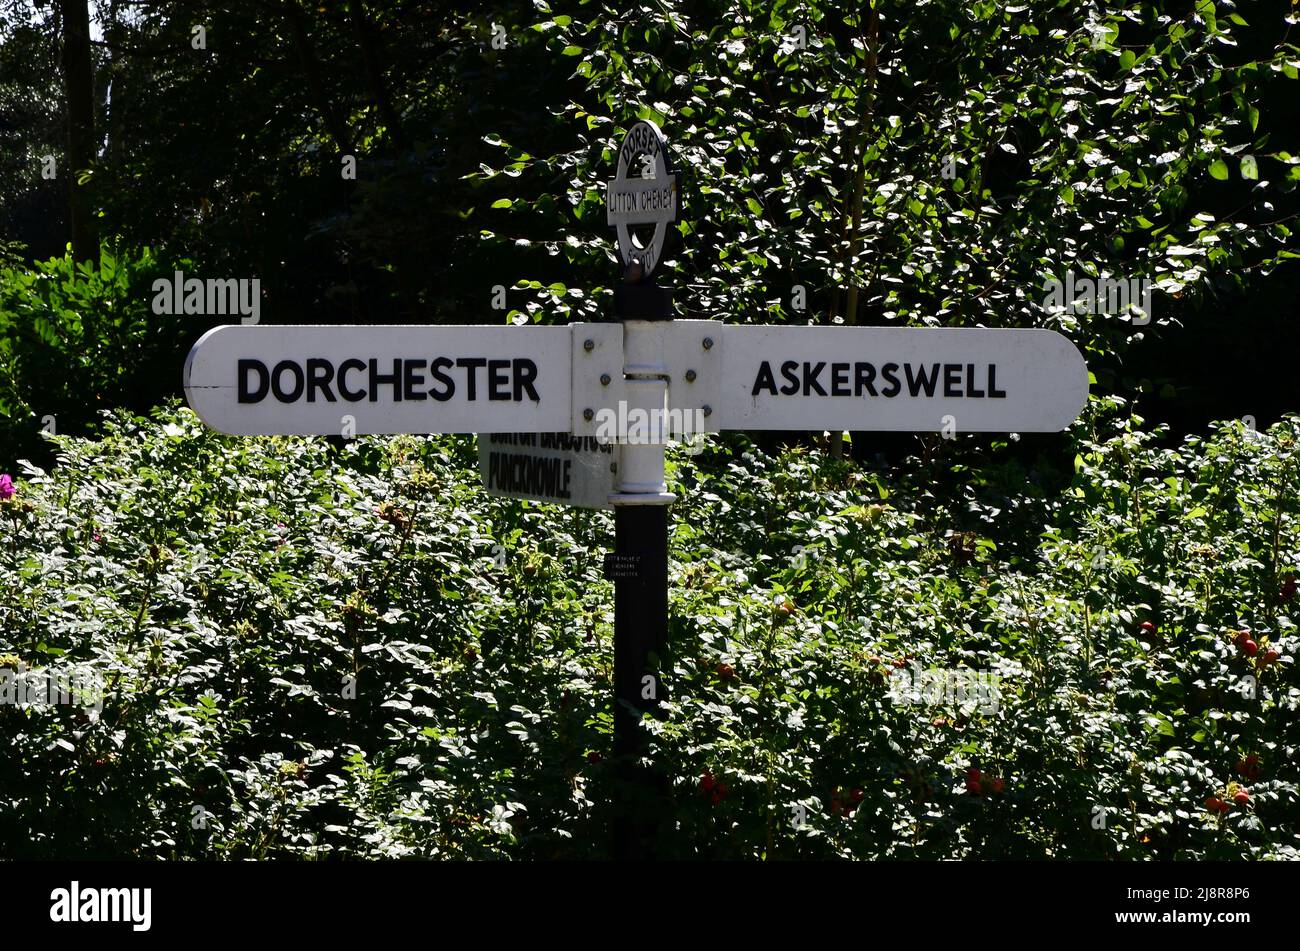 Fingerpost in Litton Cheney village near Dorchester in West Dorset, UK Stock Photo